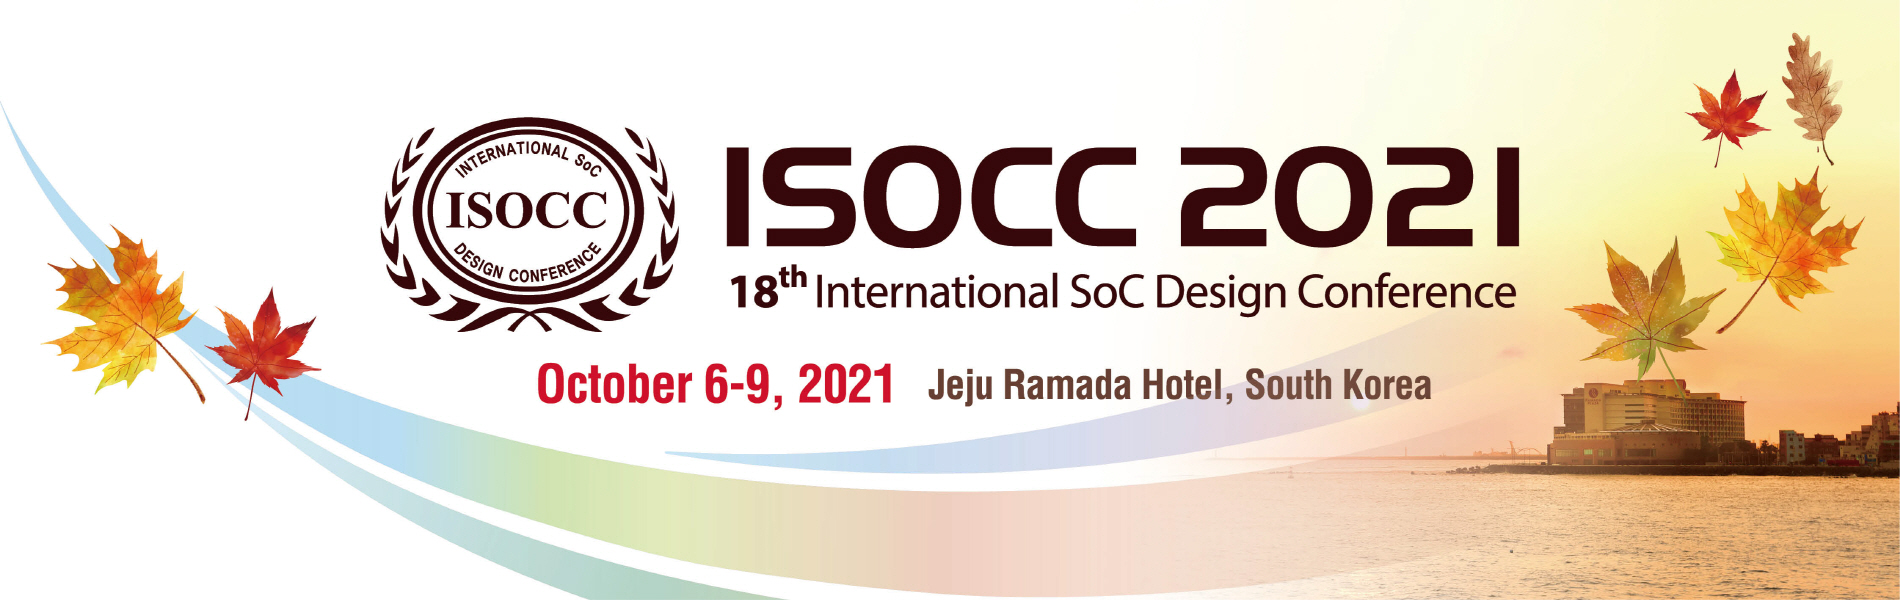 ISOCC 2021